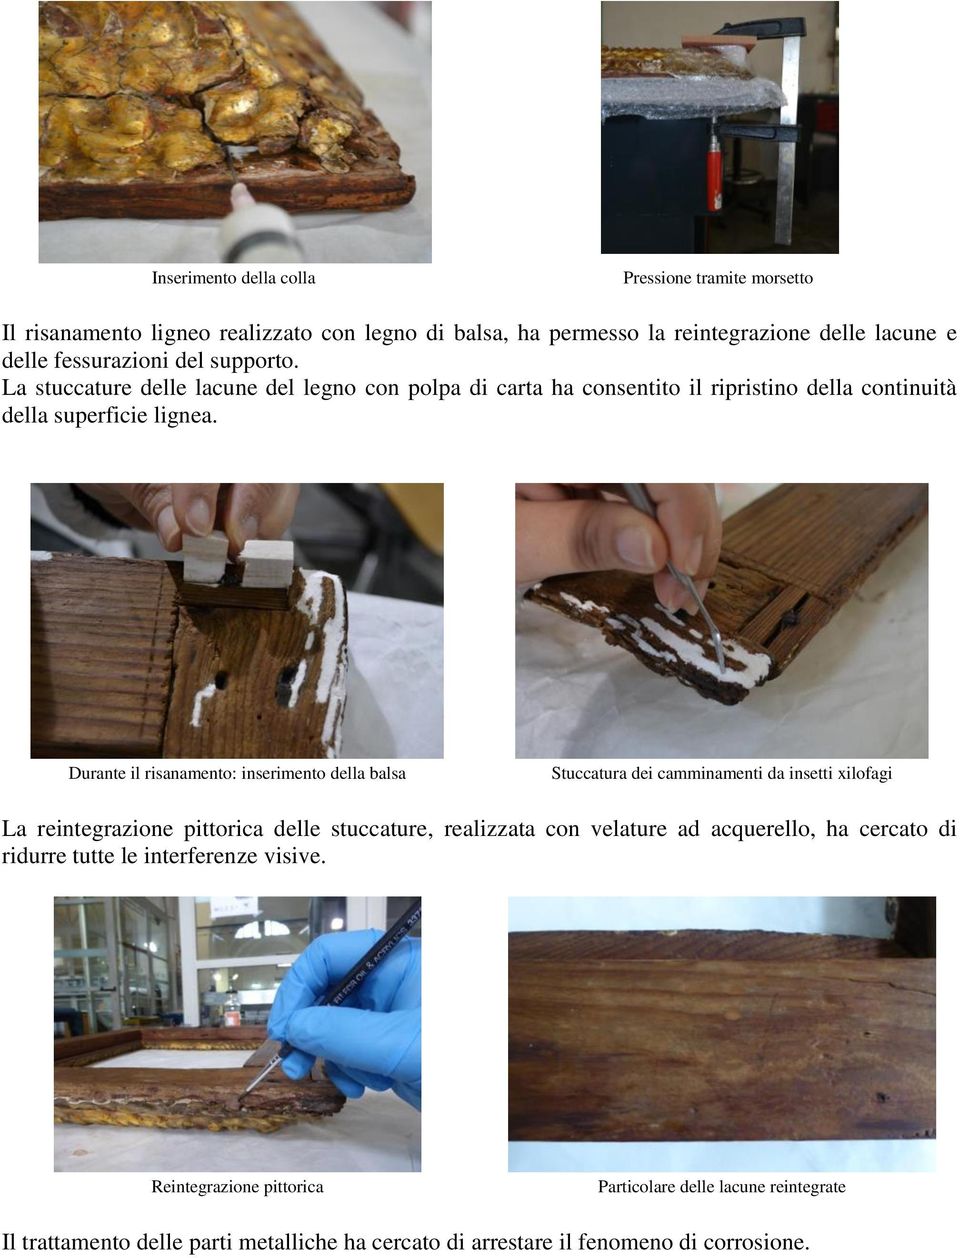 Durante il risanamento: inserimento della balsa Stuccatura dei camminamenti da insetti xilofagi La reintegrazione pittorica delle stuccature, realizzata con velature ad